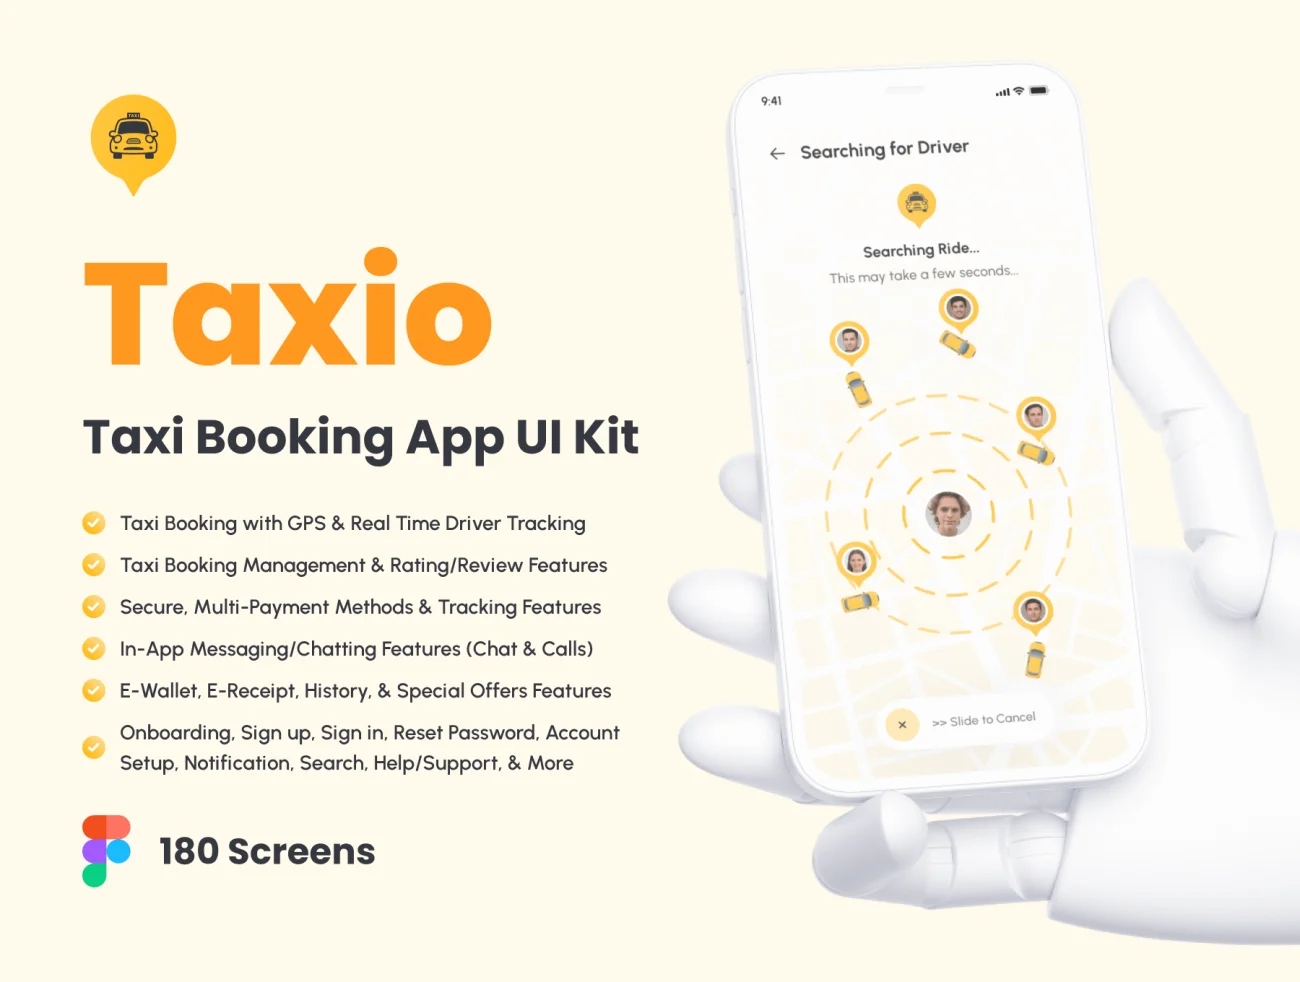 出租车预订应用程序UI套件180屏 Taxio – Taxi Booking App UI Kit .figma插图1